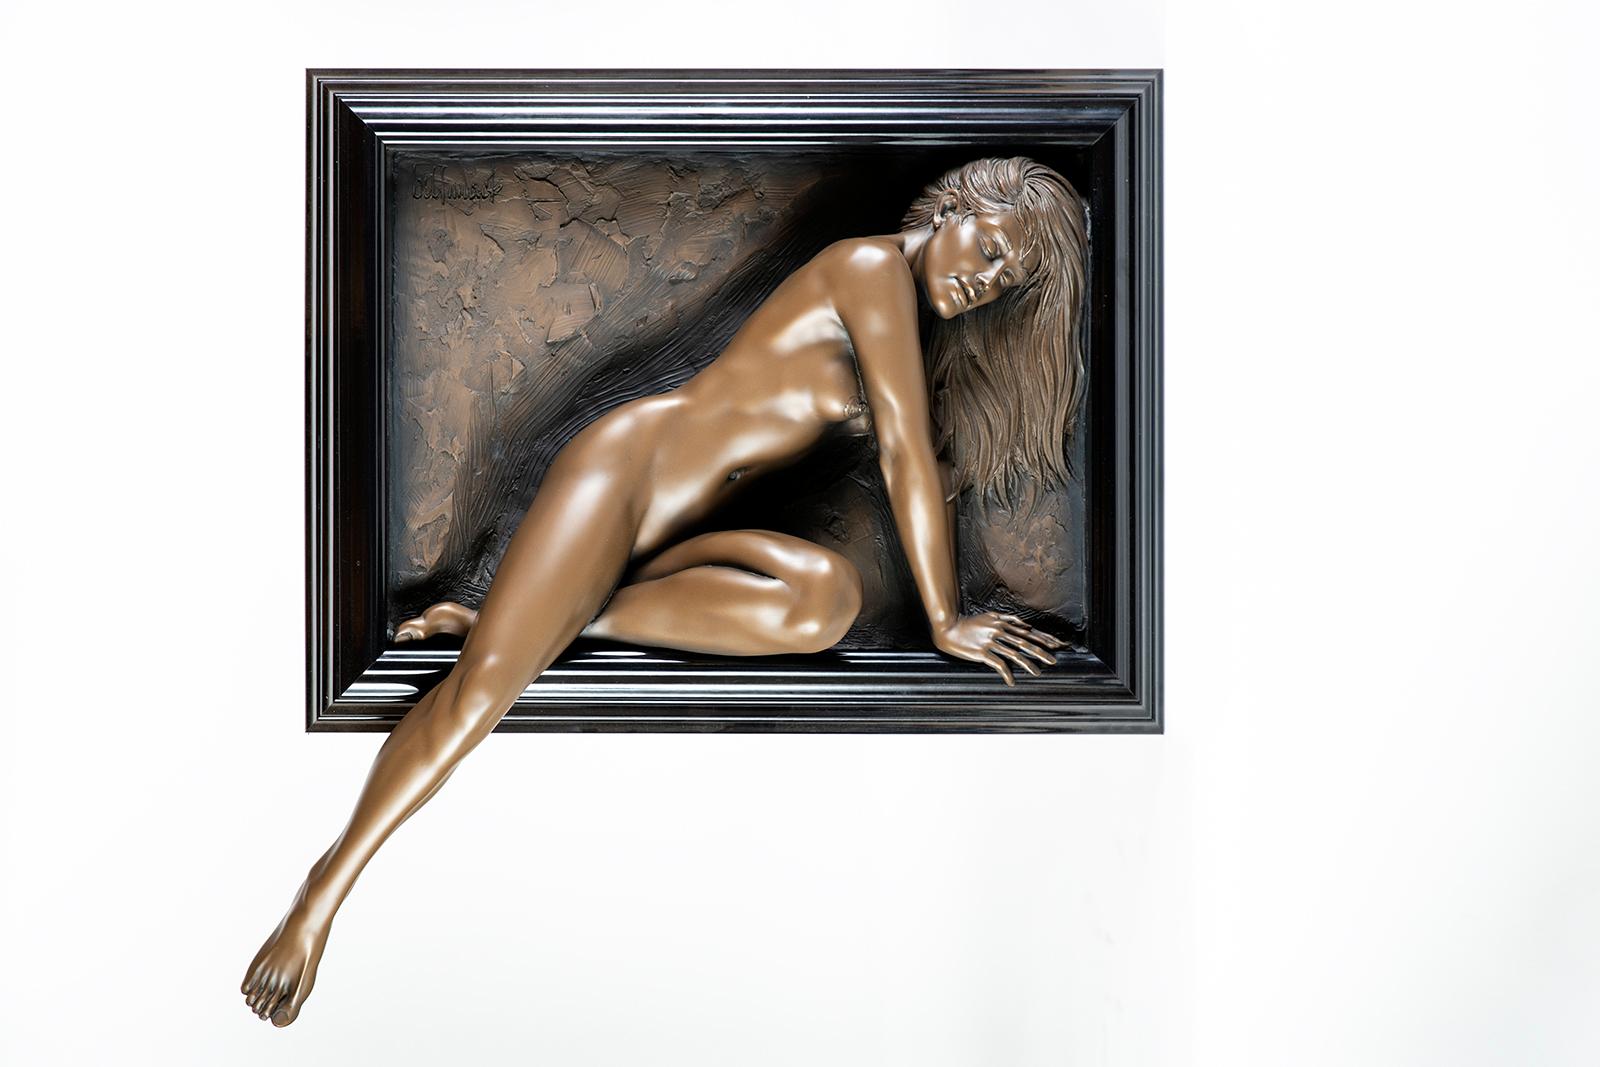 Künstler: Bill Mack

Titel: Winsome

Medium: Gebundene Bronze

Größe: 21" x 29 1/4"

Gerahmt: 32" x 40 1/4"

Jahr: 1998